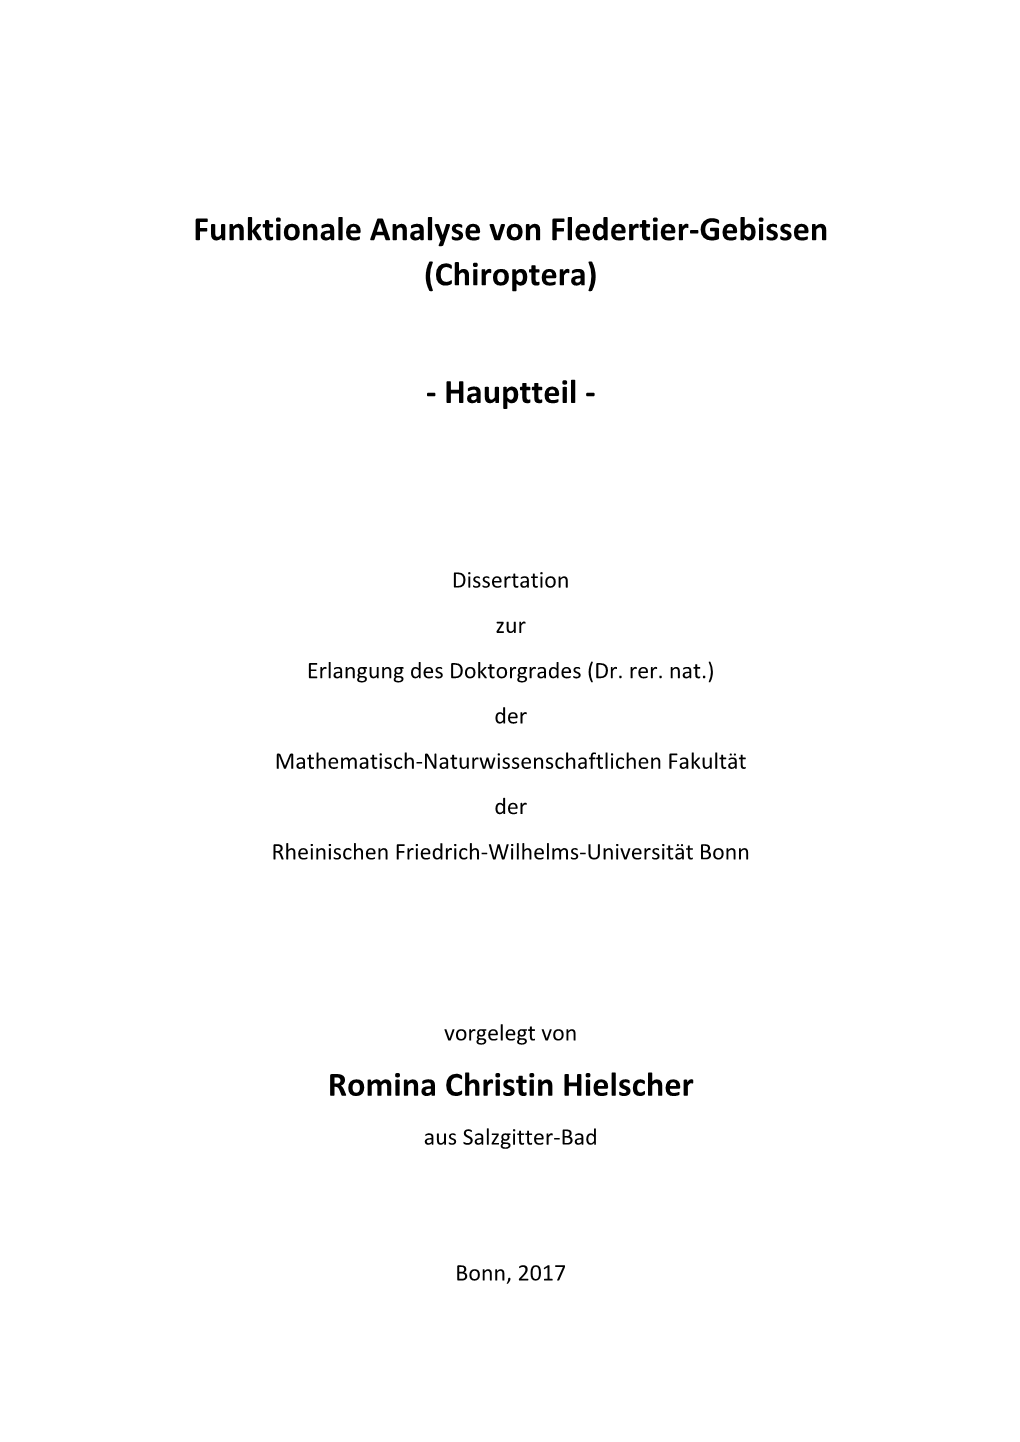 Funktionale Analyse Von Fledertier‐Gebissen (Chiroptera) / Hauptteil